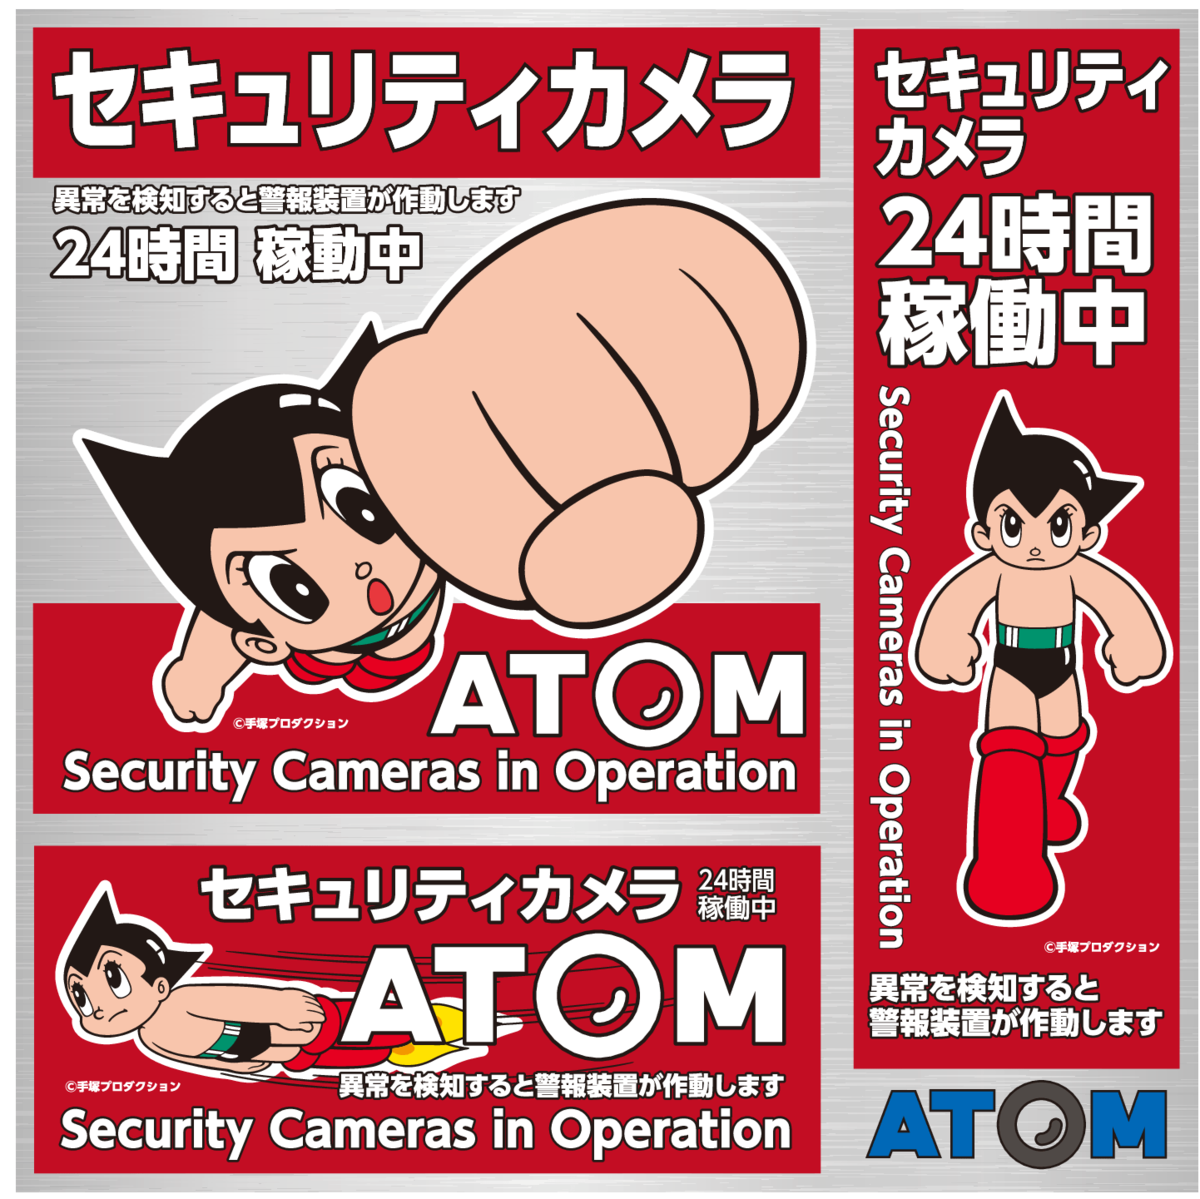 店舗向けセキュリティカメラ Atom Biz が 日本マーケティングリサーチ機構の調査で3冠を獲得しました